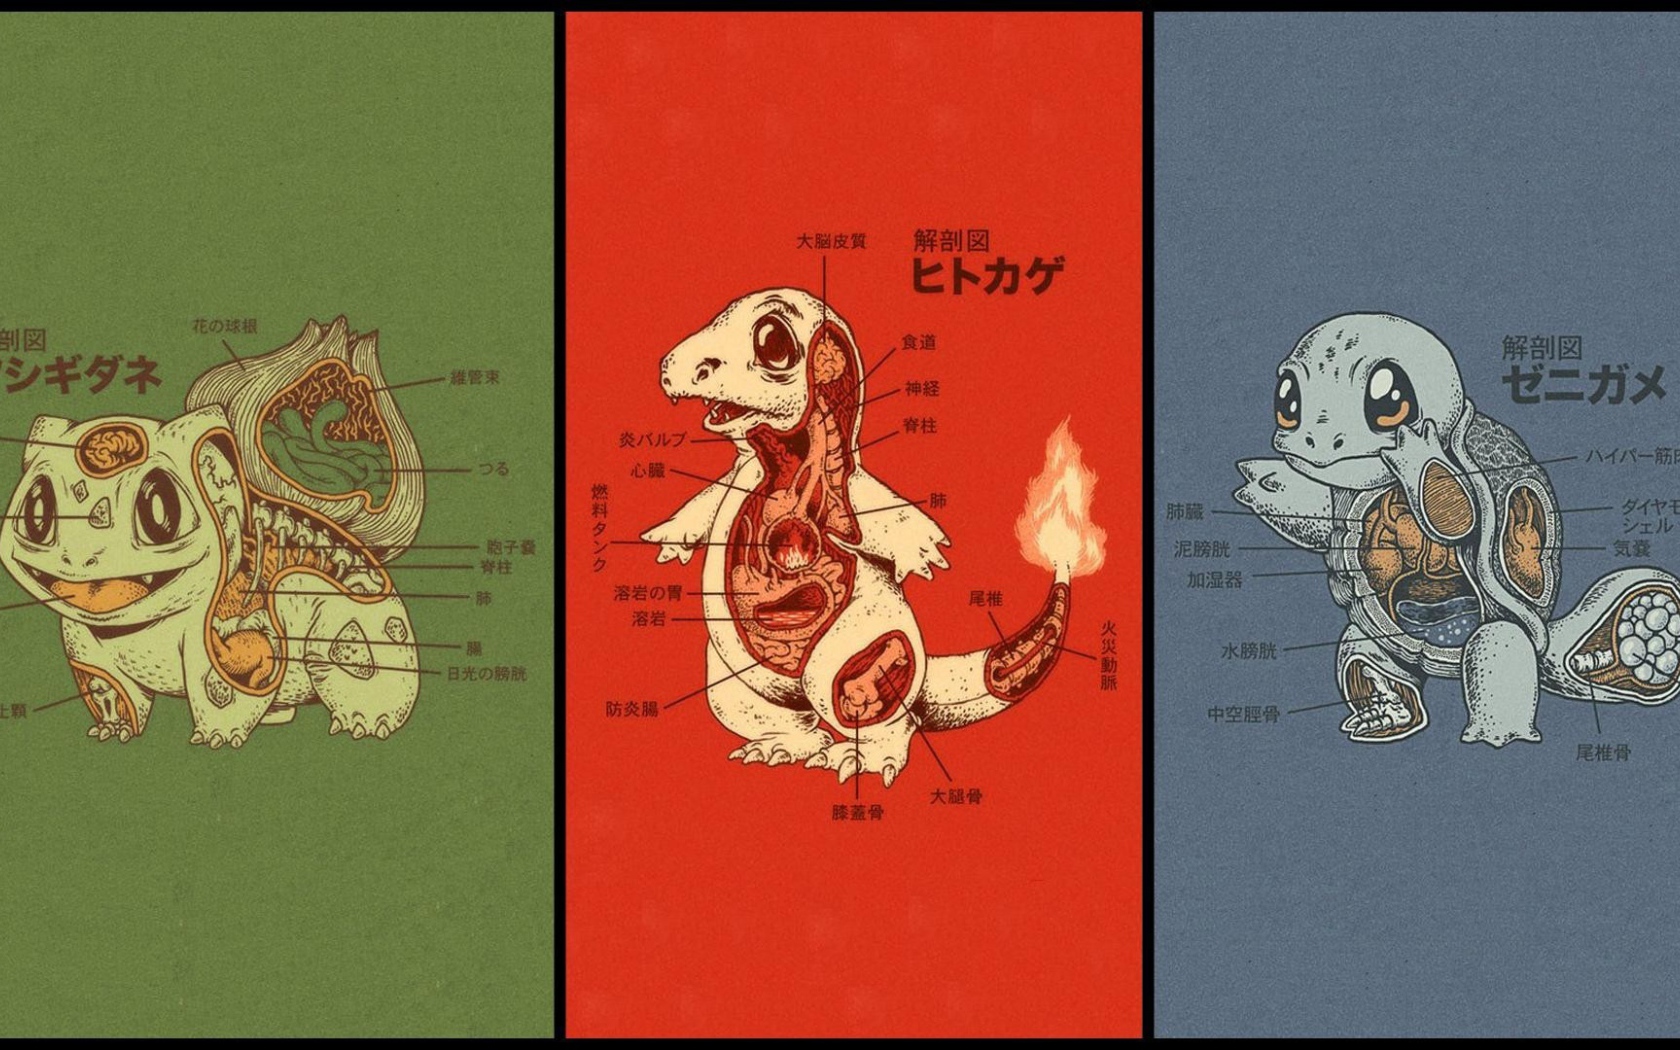 Anatomy of different Pokemon